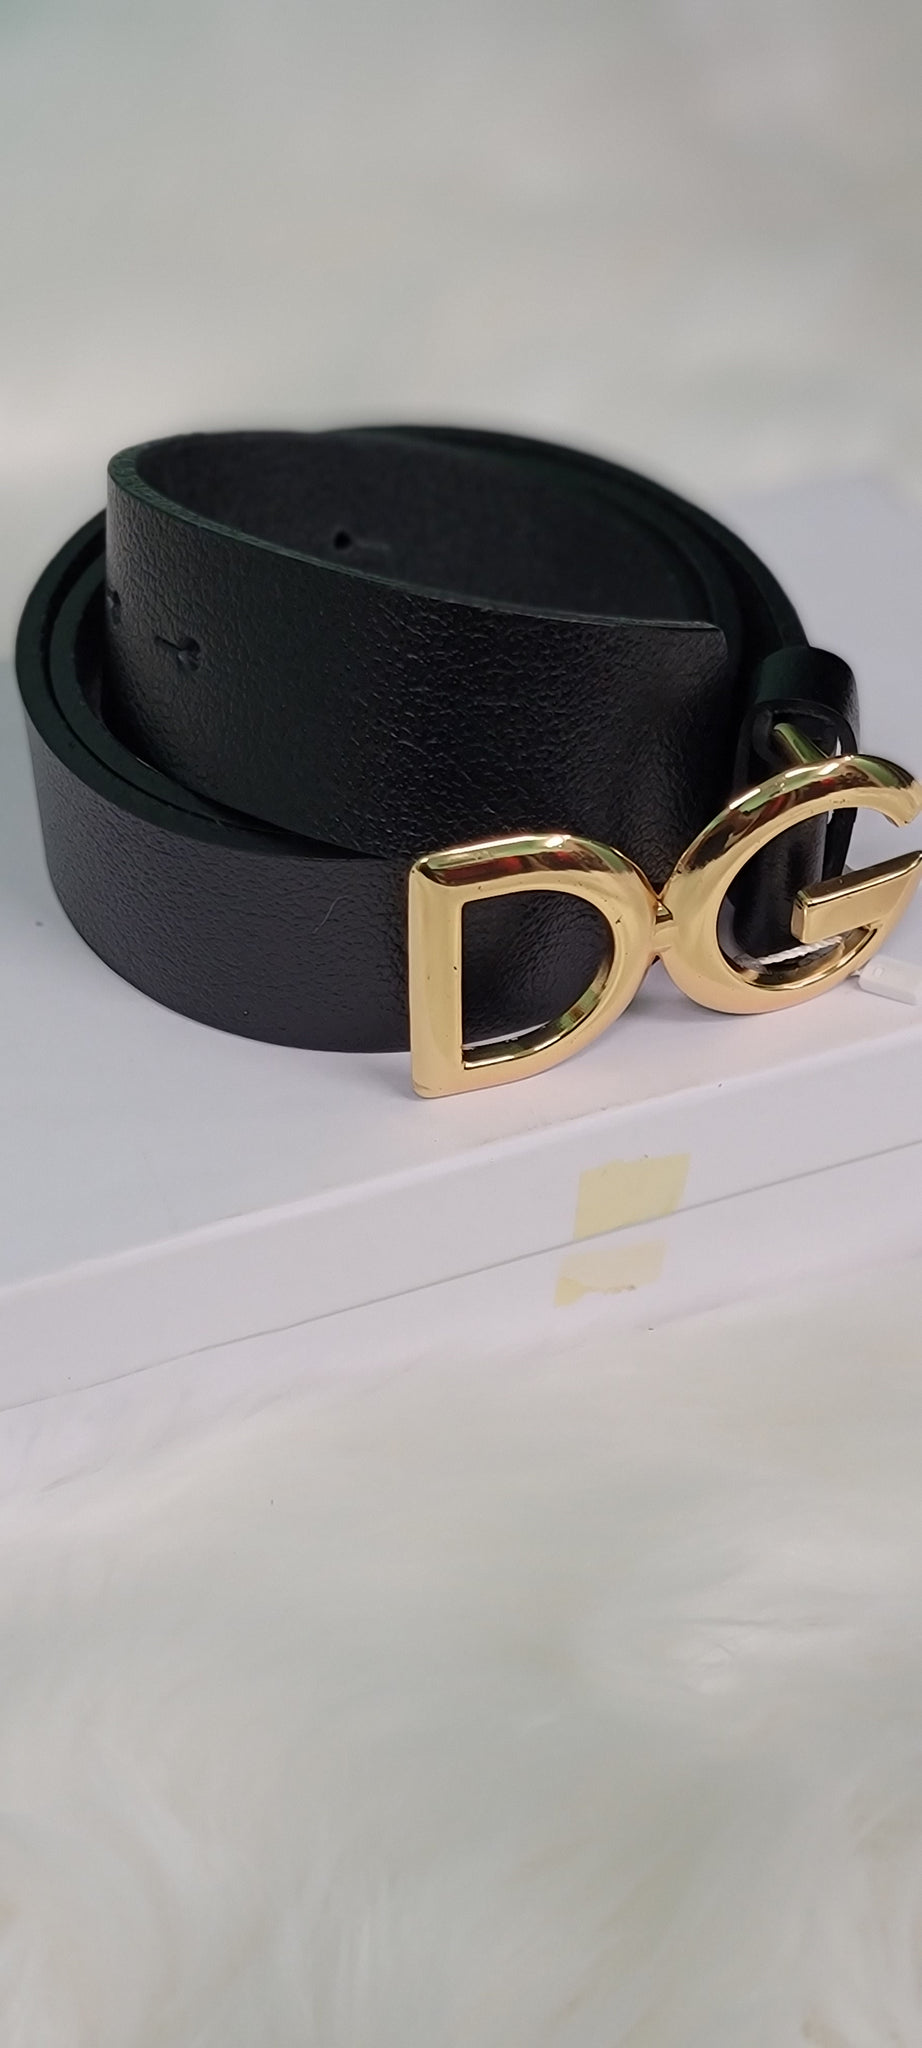 DG unisex leather belt - Godshandfashion - small / black/gold